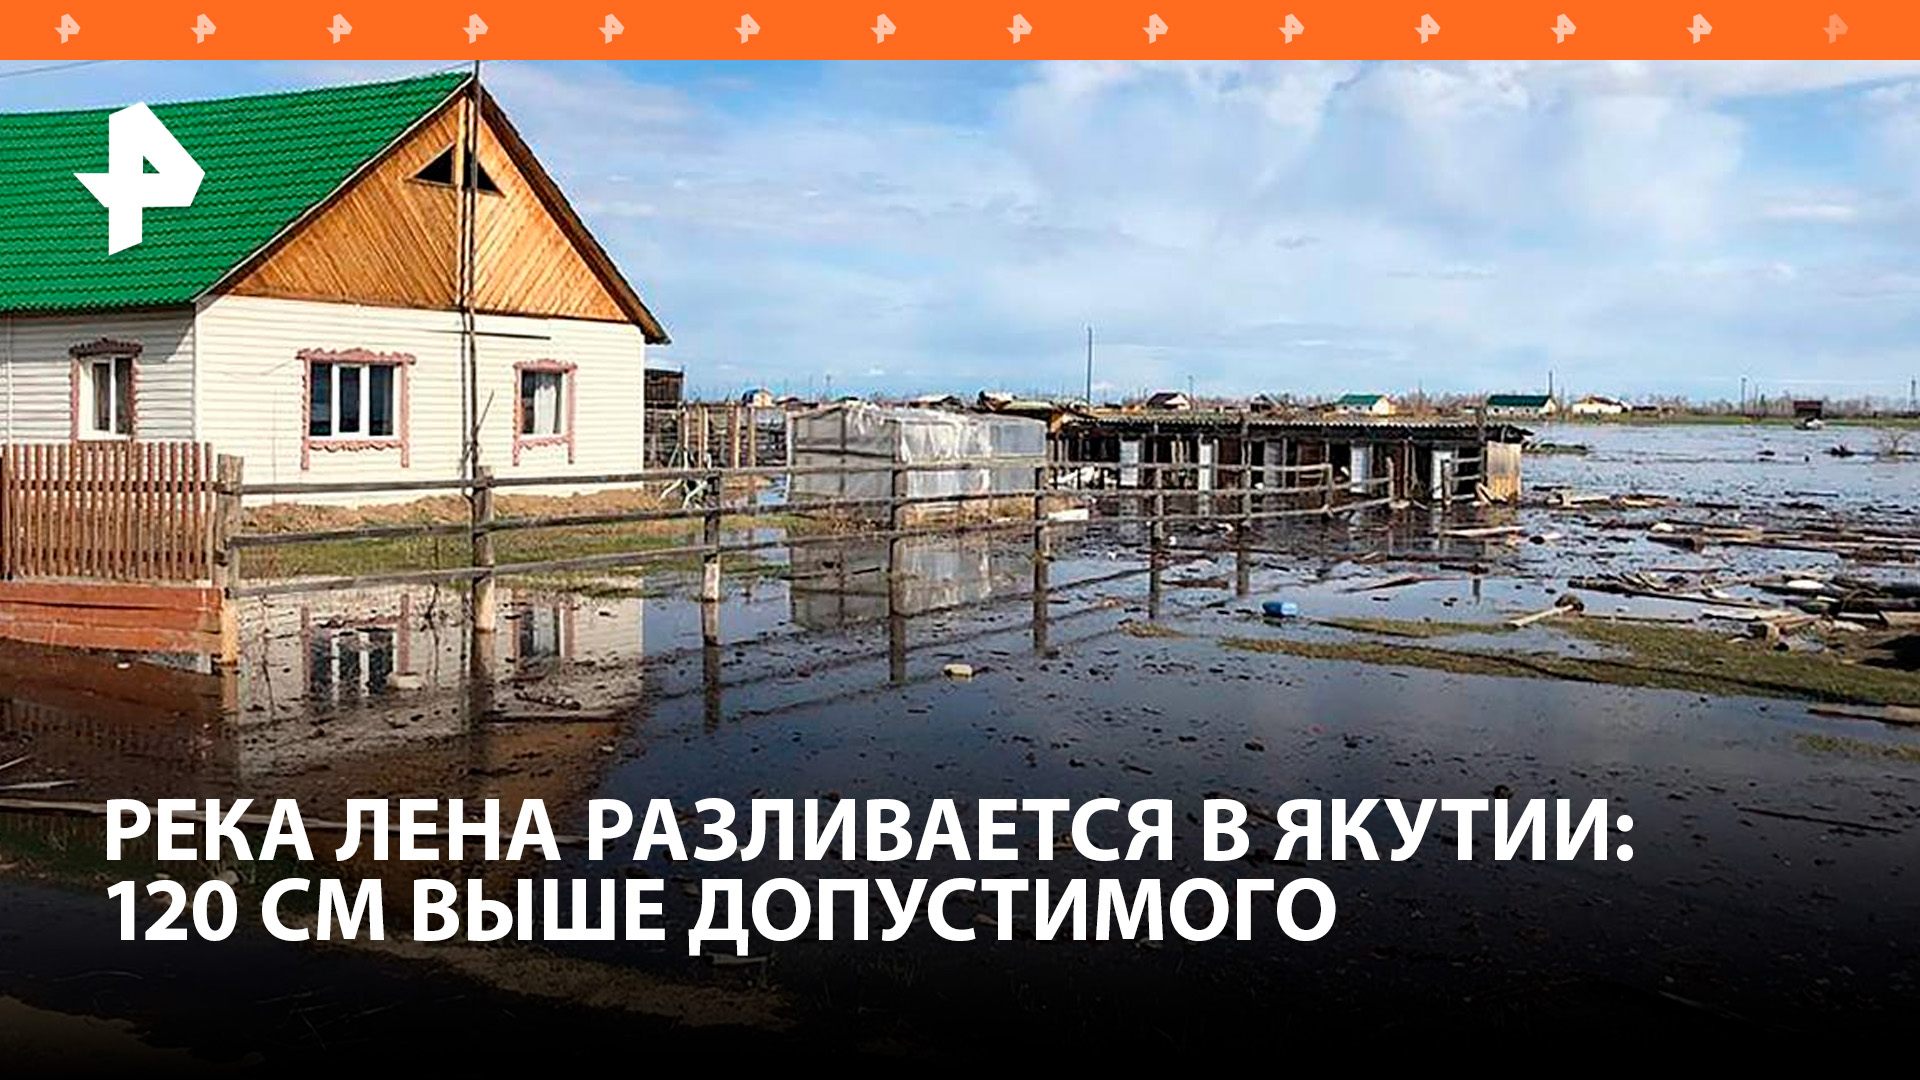 Река Лена в Якутии вышла из берегов - уровень воды поднялся на 120 см выше максимально допустимого